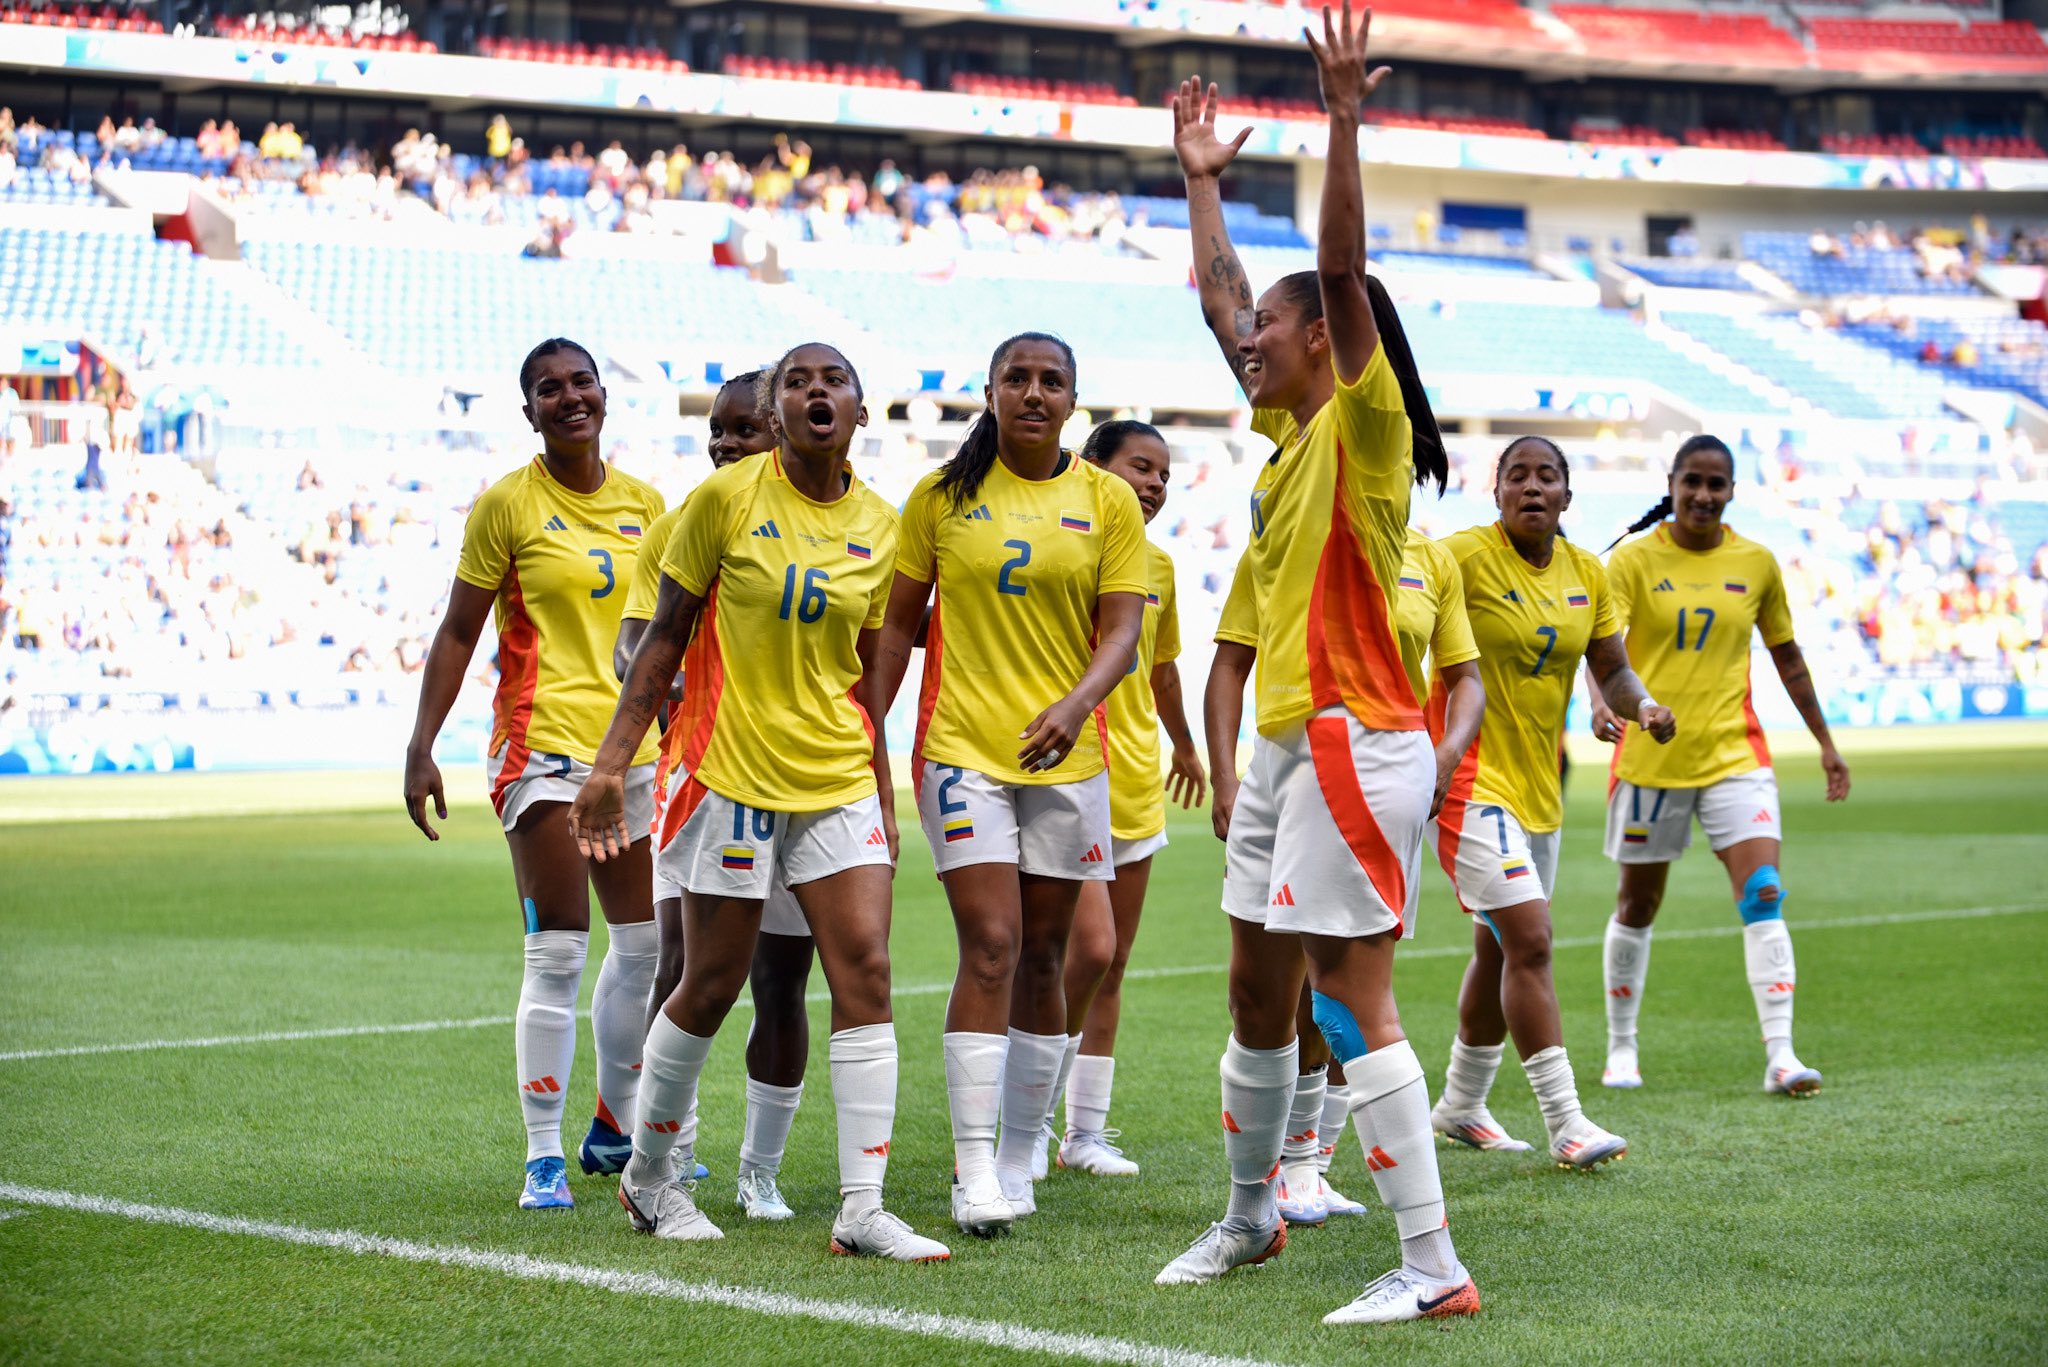 Jugadoras de Colombia celebrando uno de los goles.